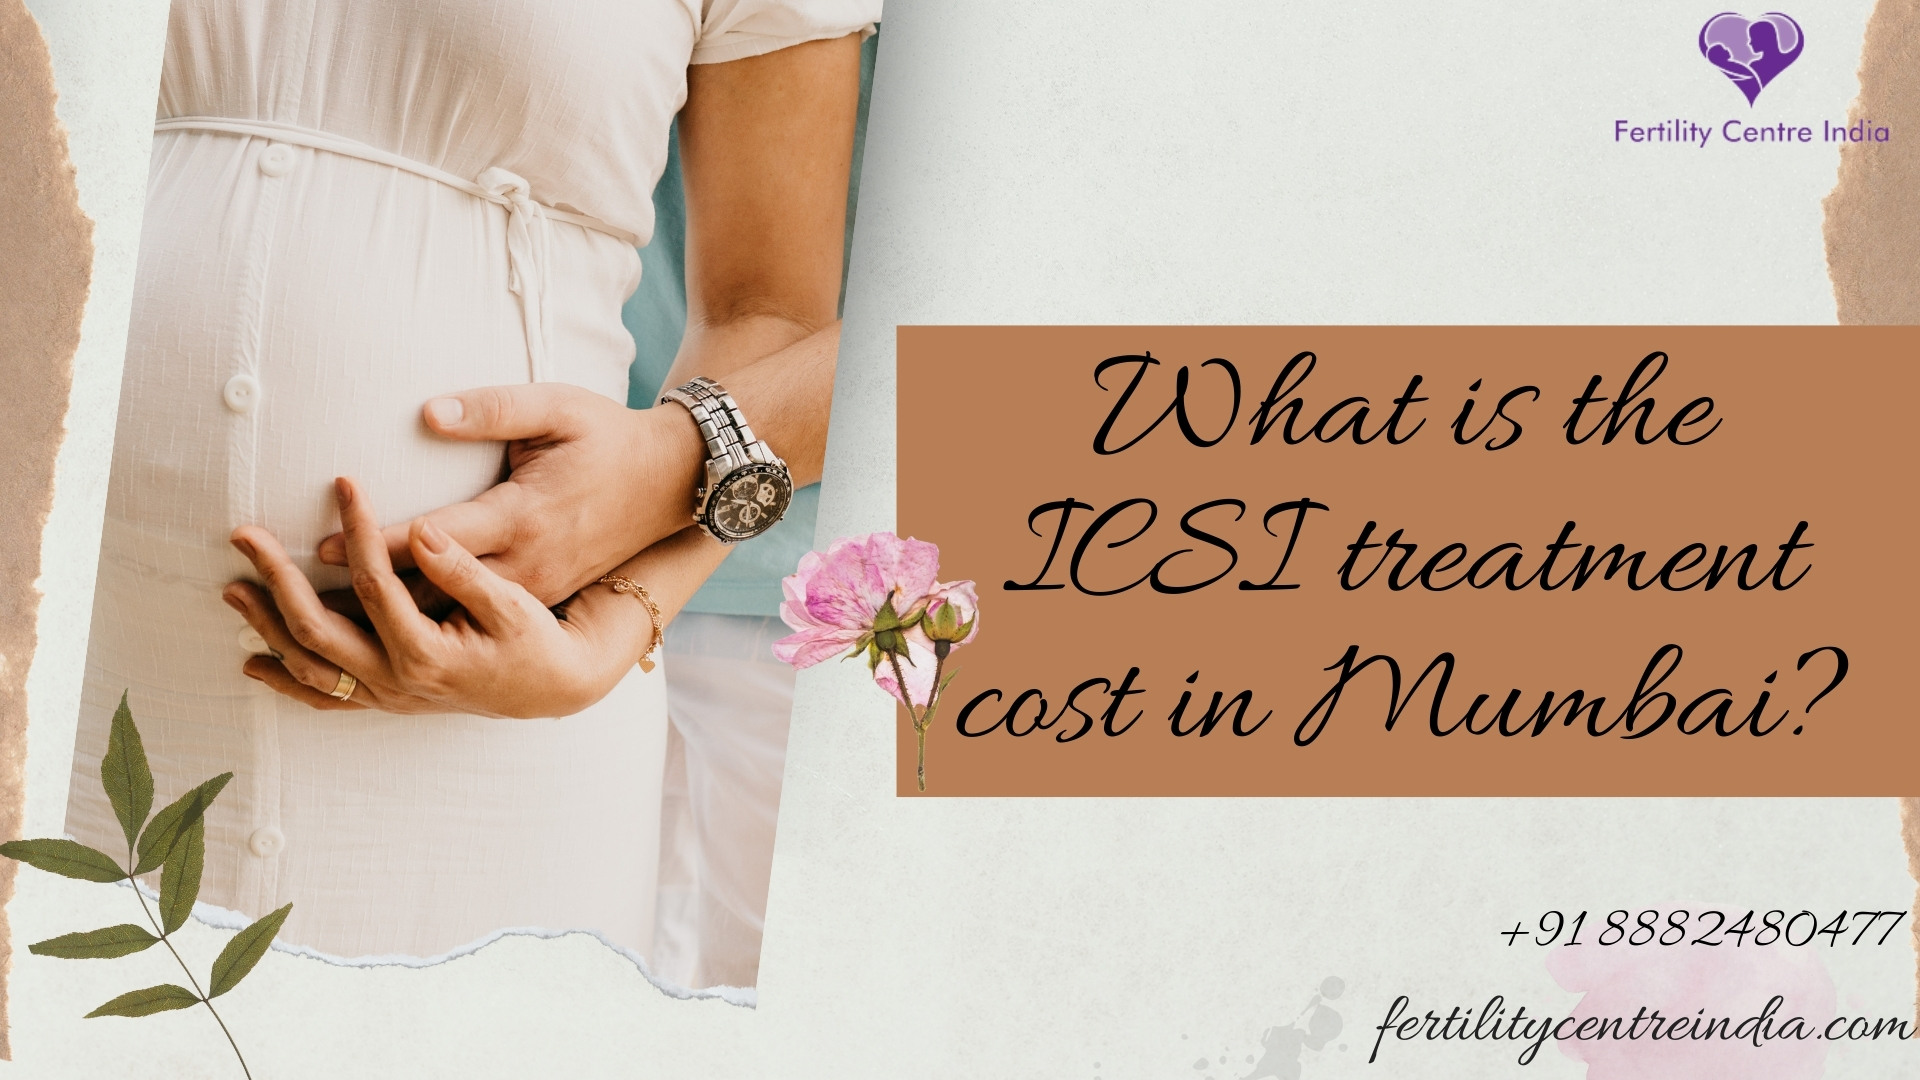 ICSI treatment cost in Mumbai